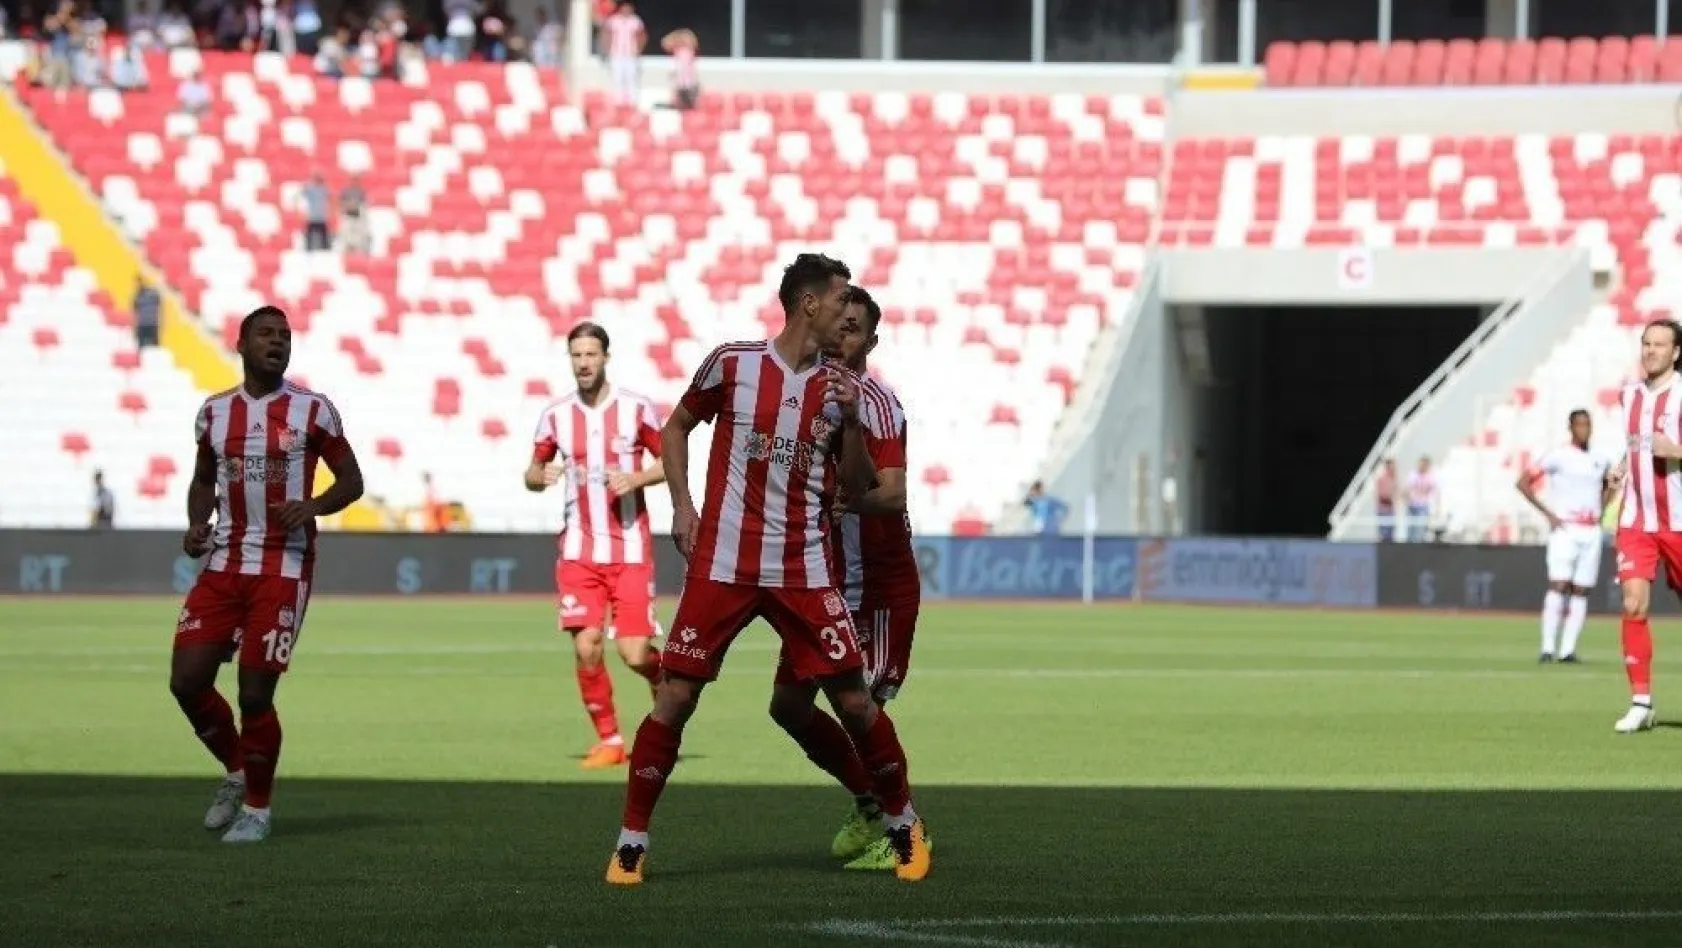 Süper Lig: D.G. Sivasspor: 3 - Antalyaspor: 0 (İlk yarı)
